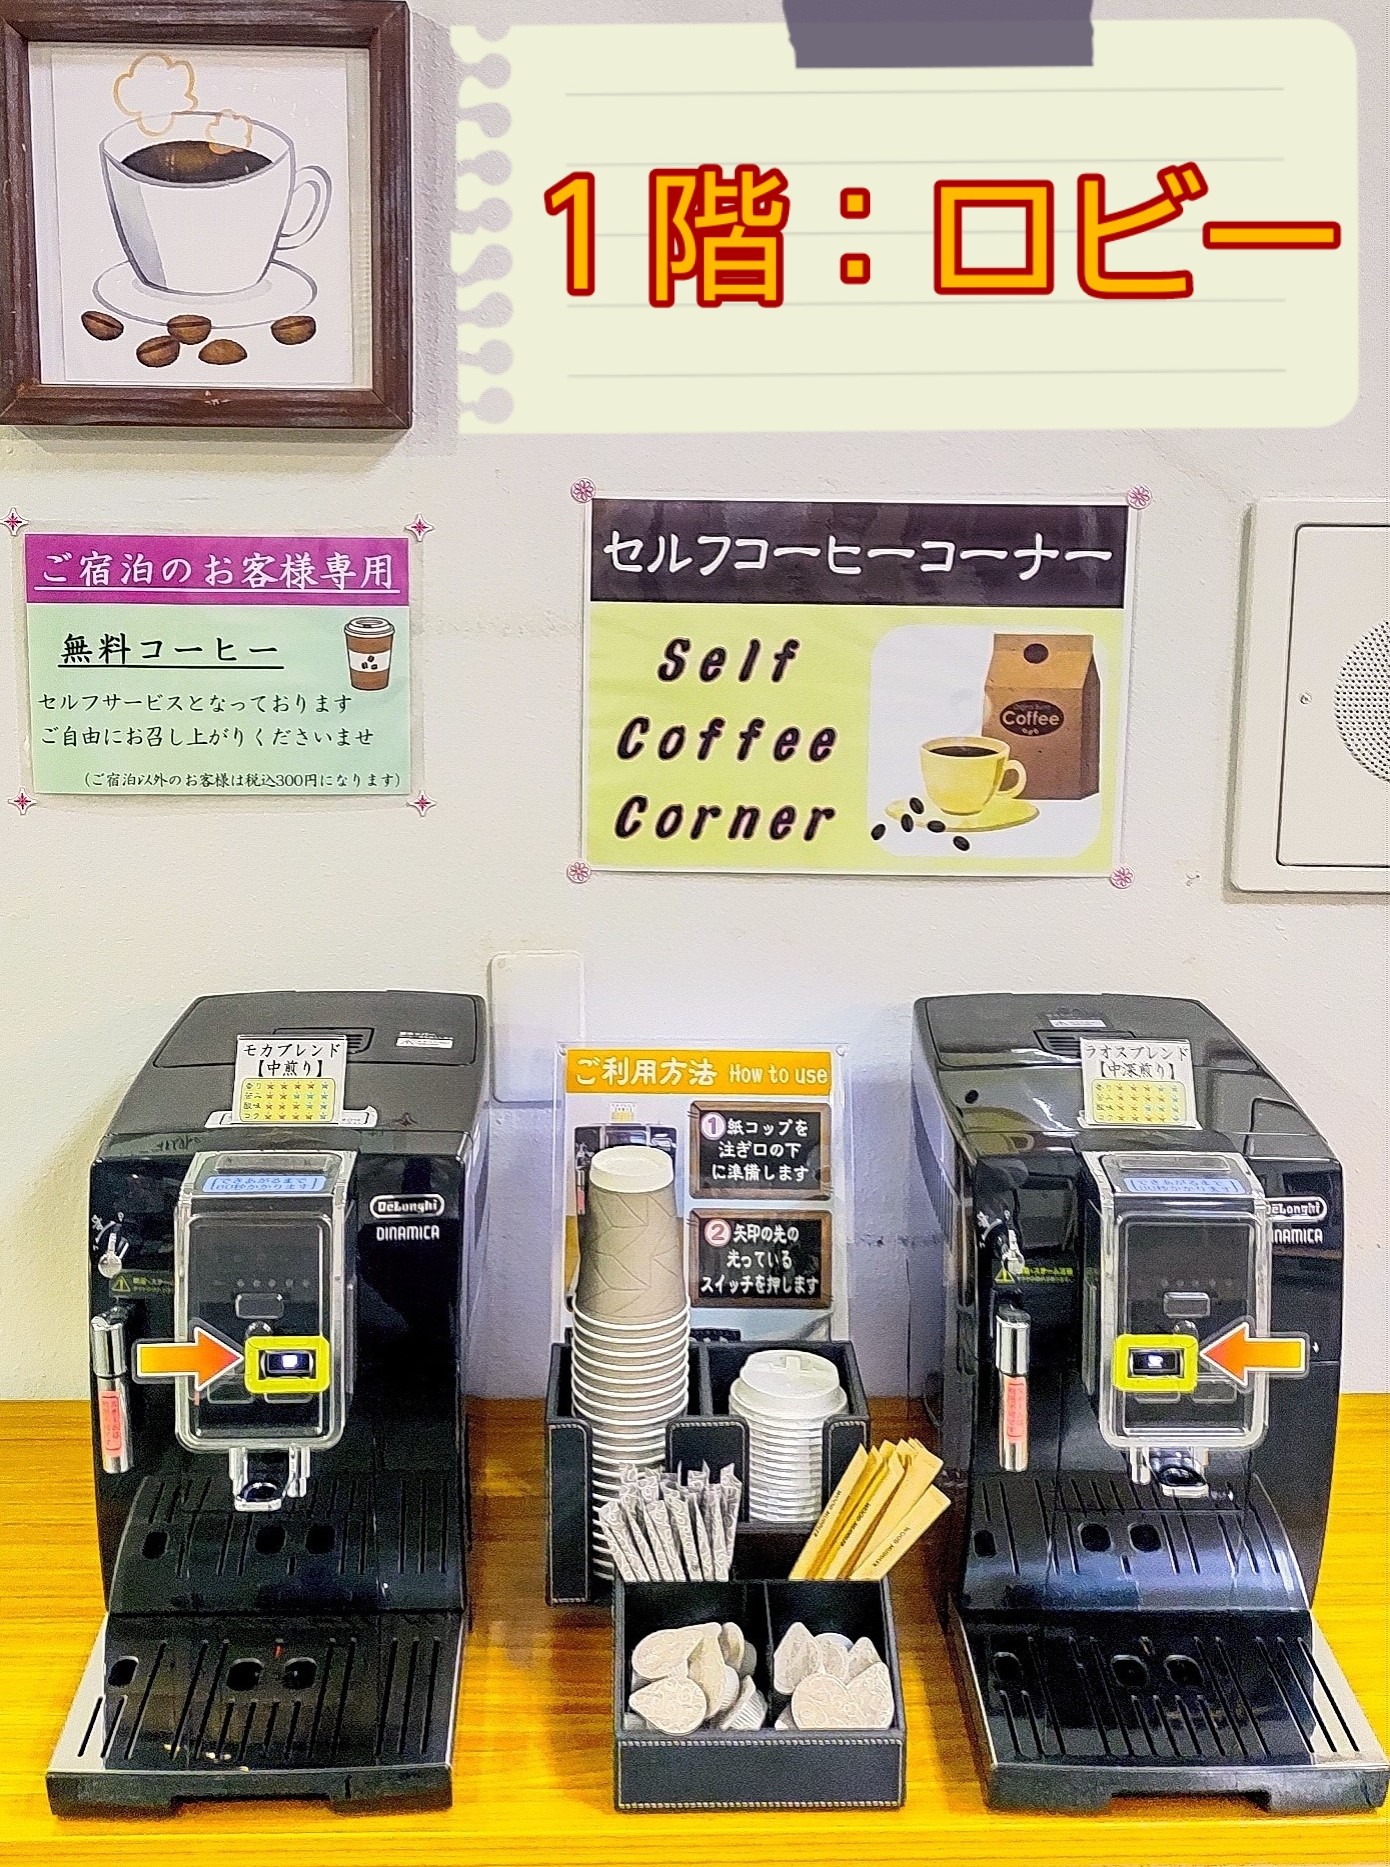 1F ロビー『無料コーヒーコーナー』